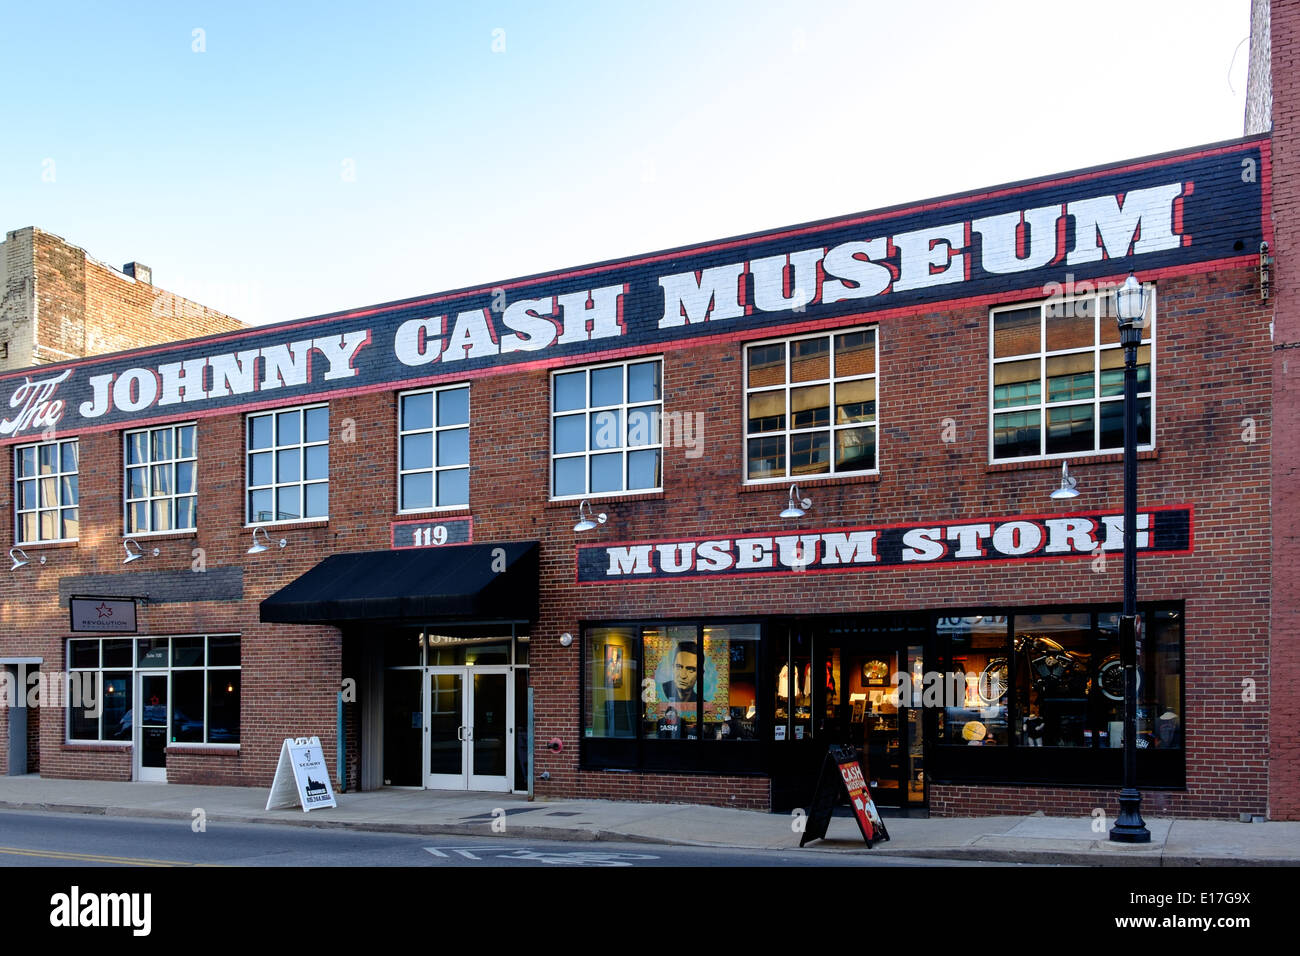 The-Johnny-Cash-Museum-in-Nashville-Tenn